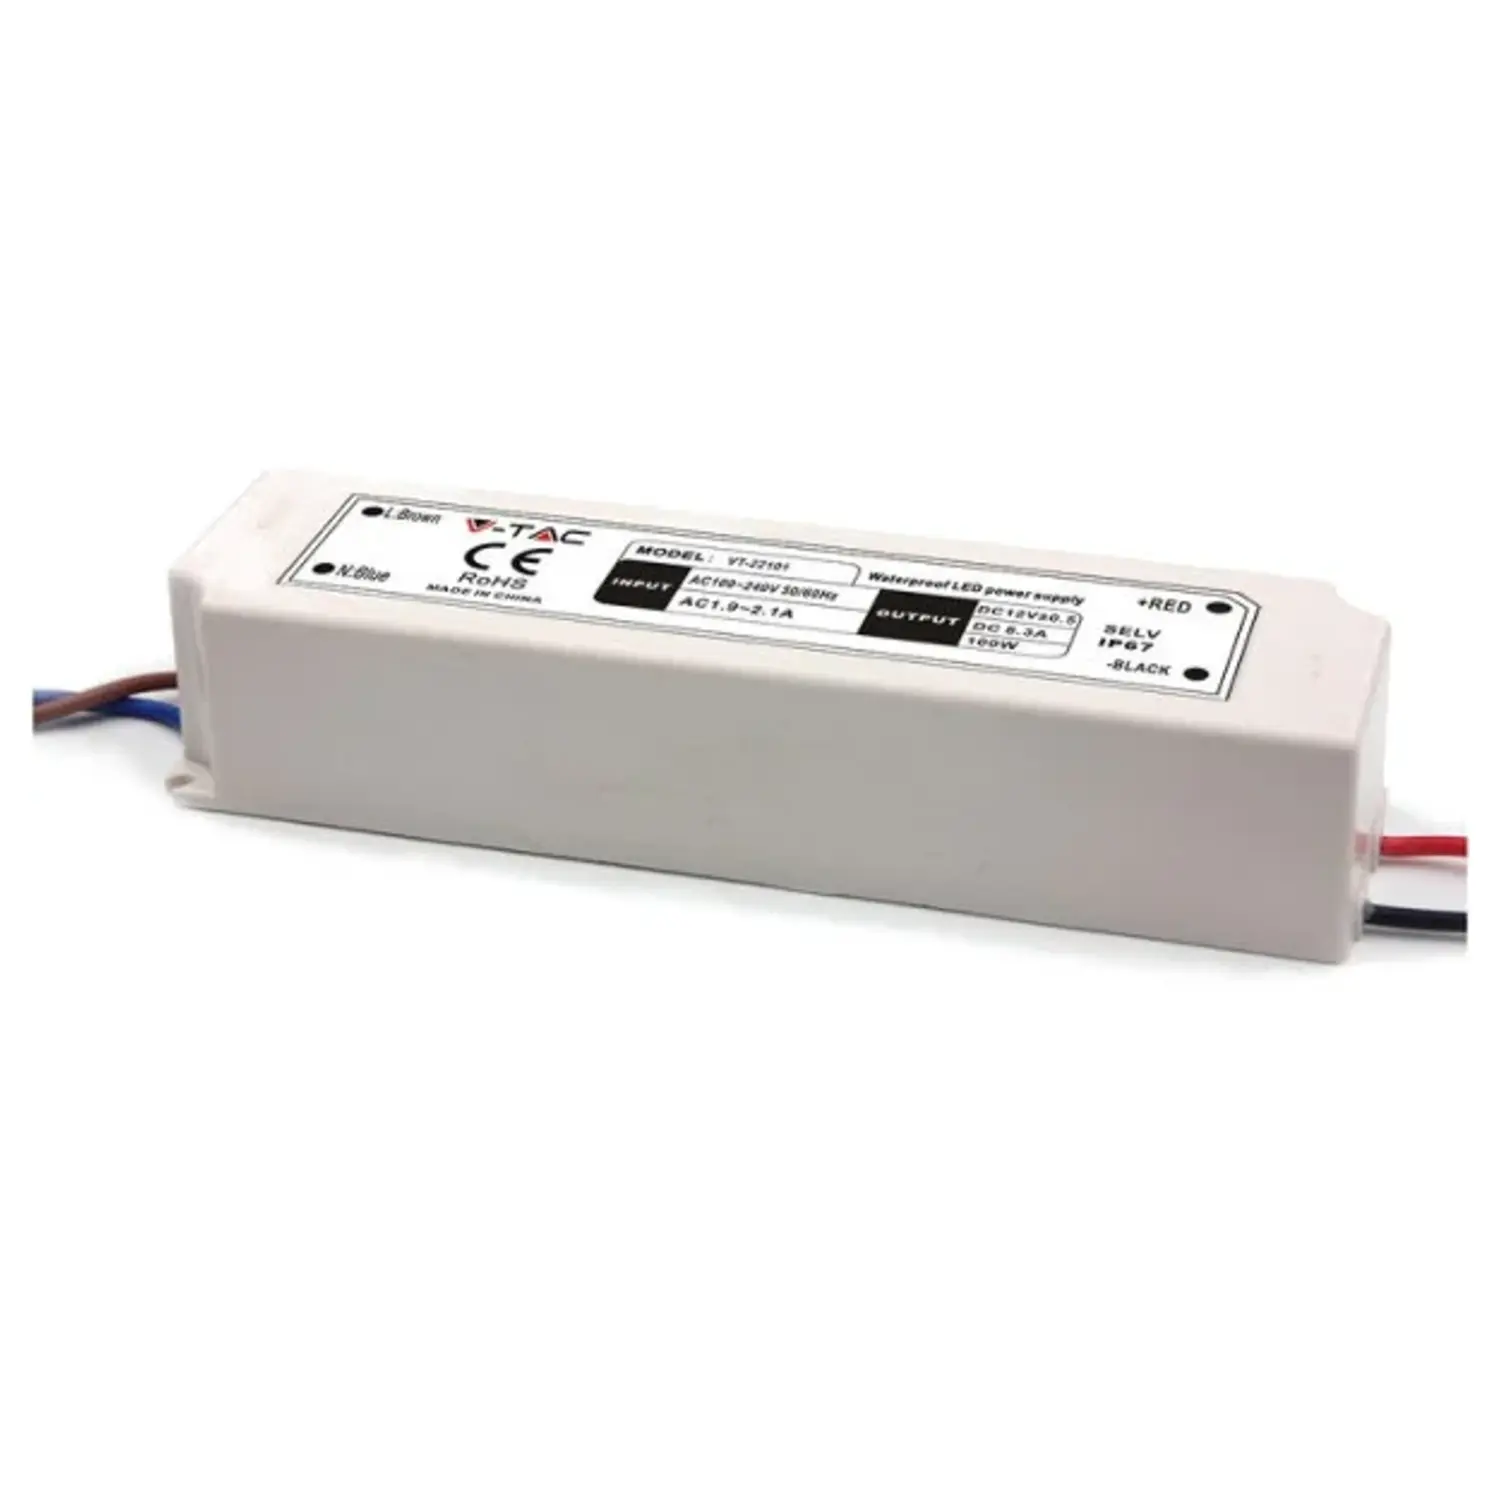 immagine del prodotto alimentatore led trasformatore in plastica stagno 100 watt 12 volt ip67 pro